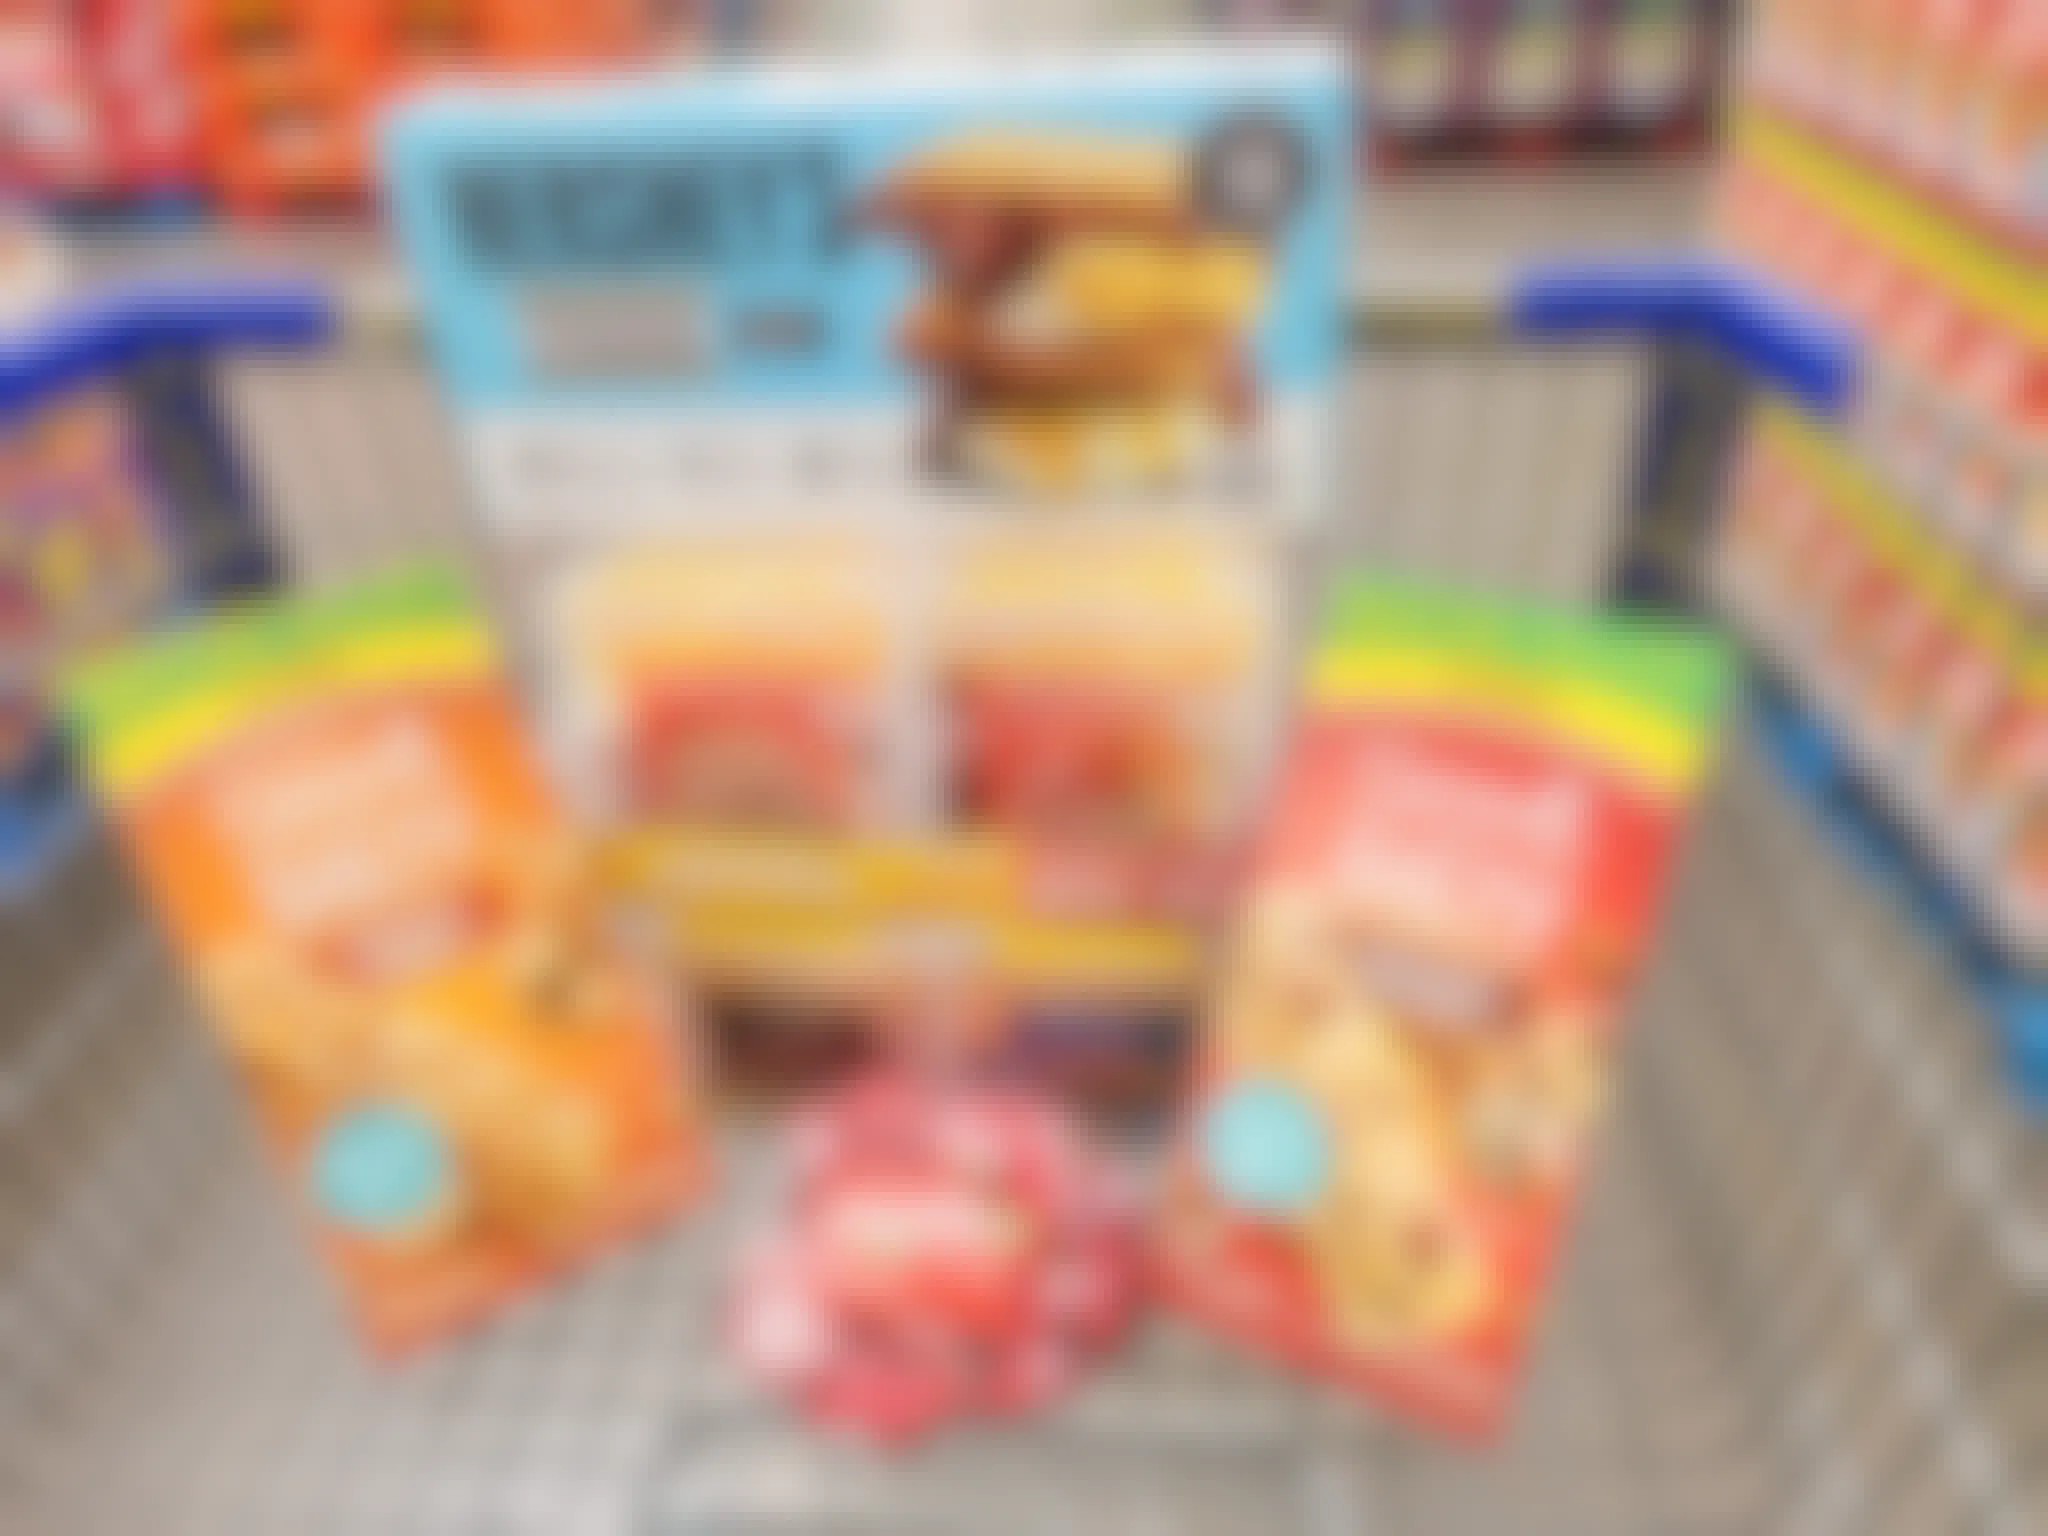 cart full of snacks